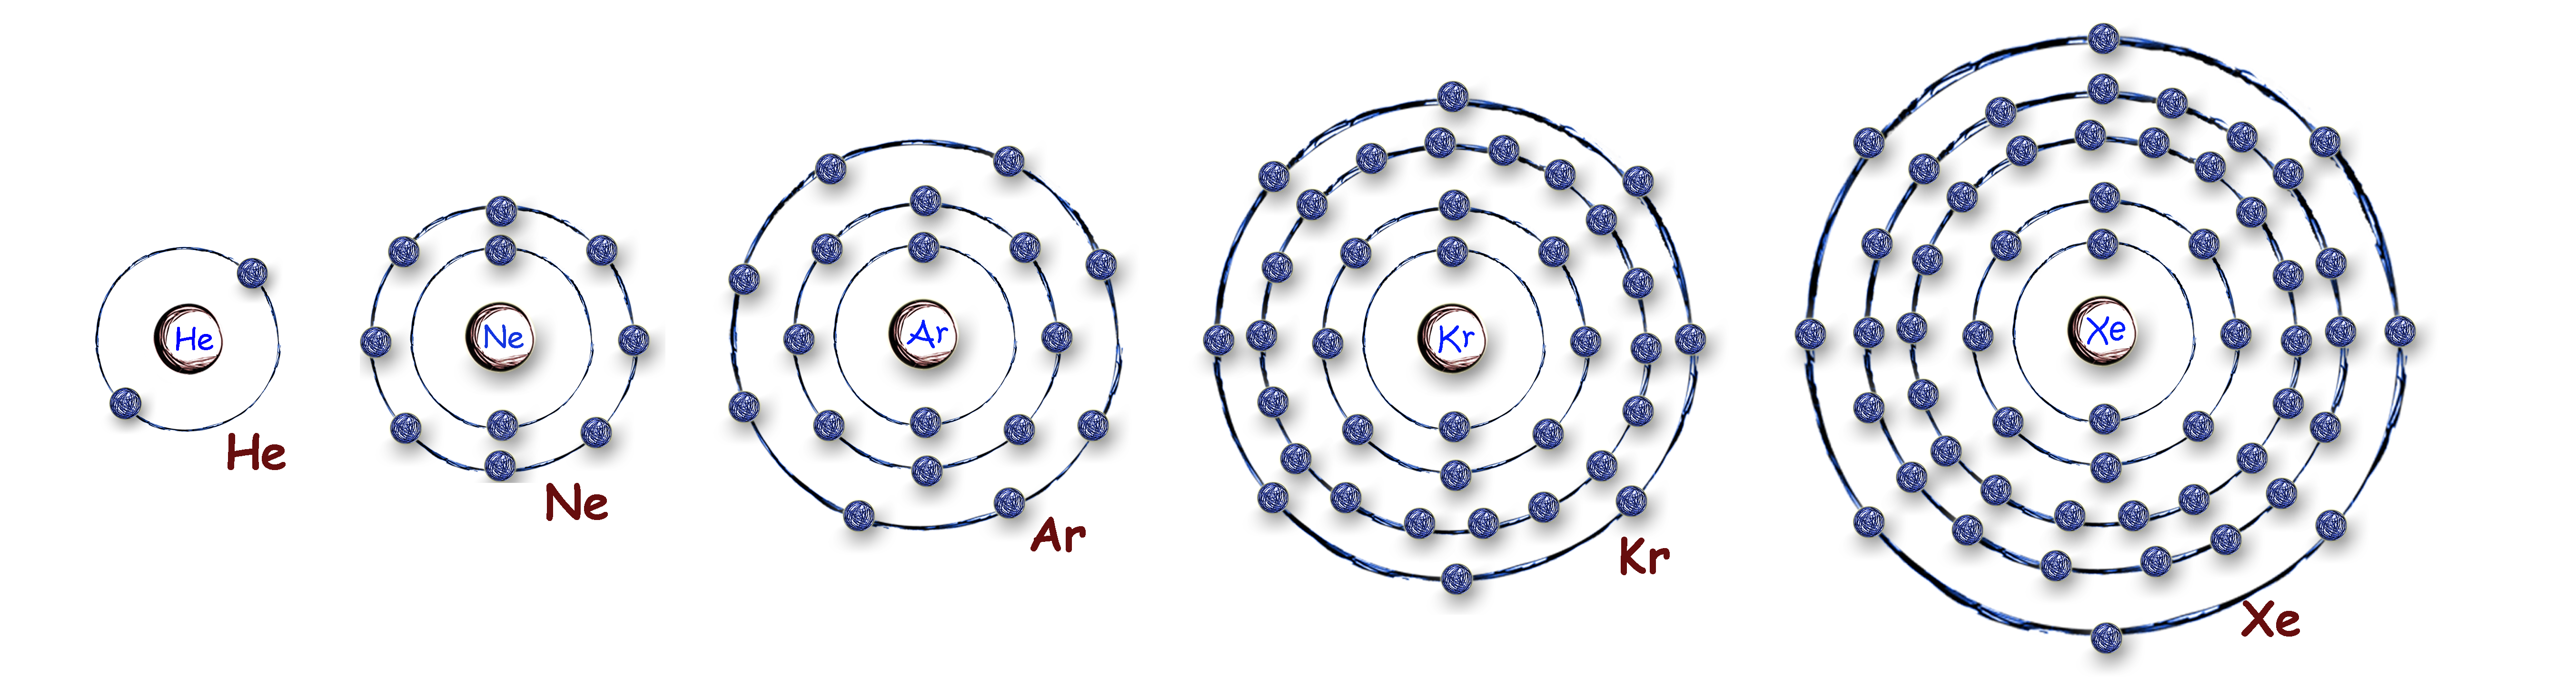 Планетарная модель атома гелия. Атомная модель гелия. Модель строения атома гелия. Атом гелия строение атома. Модель атома гелия